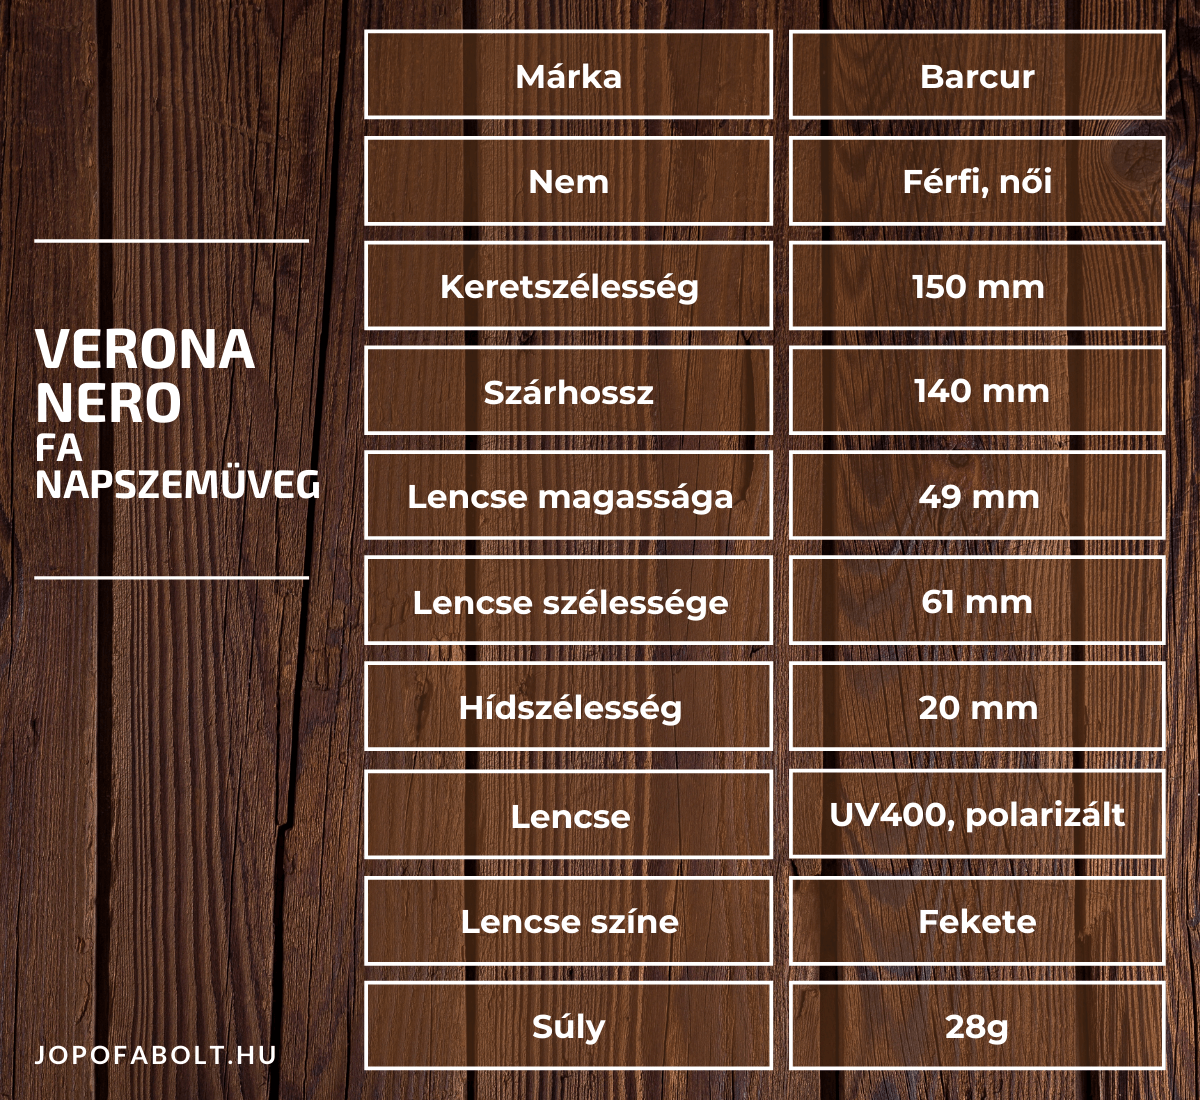 Verona Nero Fa Napszemüveg termékleírás